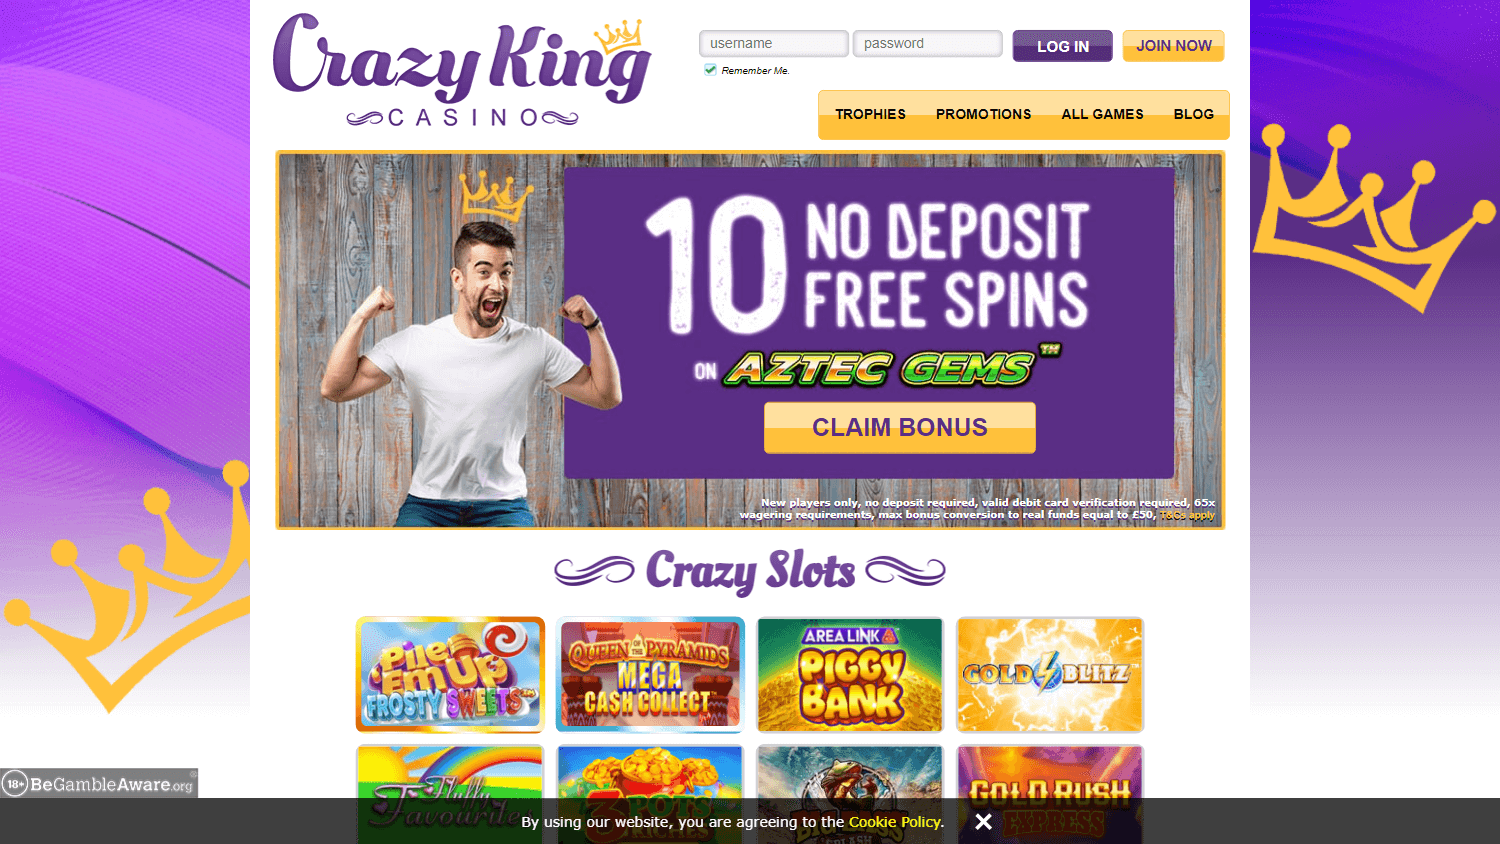 crazy_king_casino_homepage_desktop